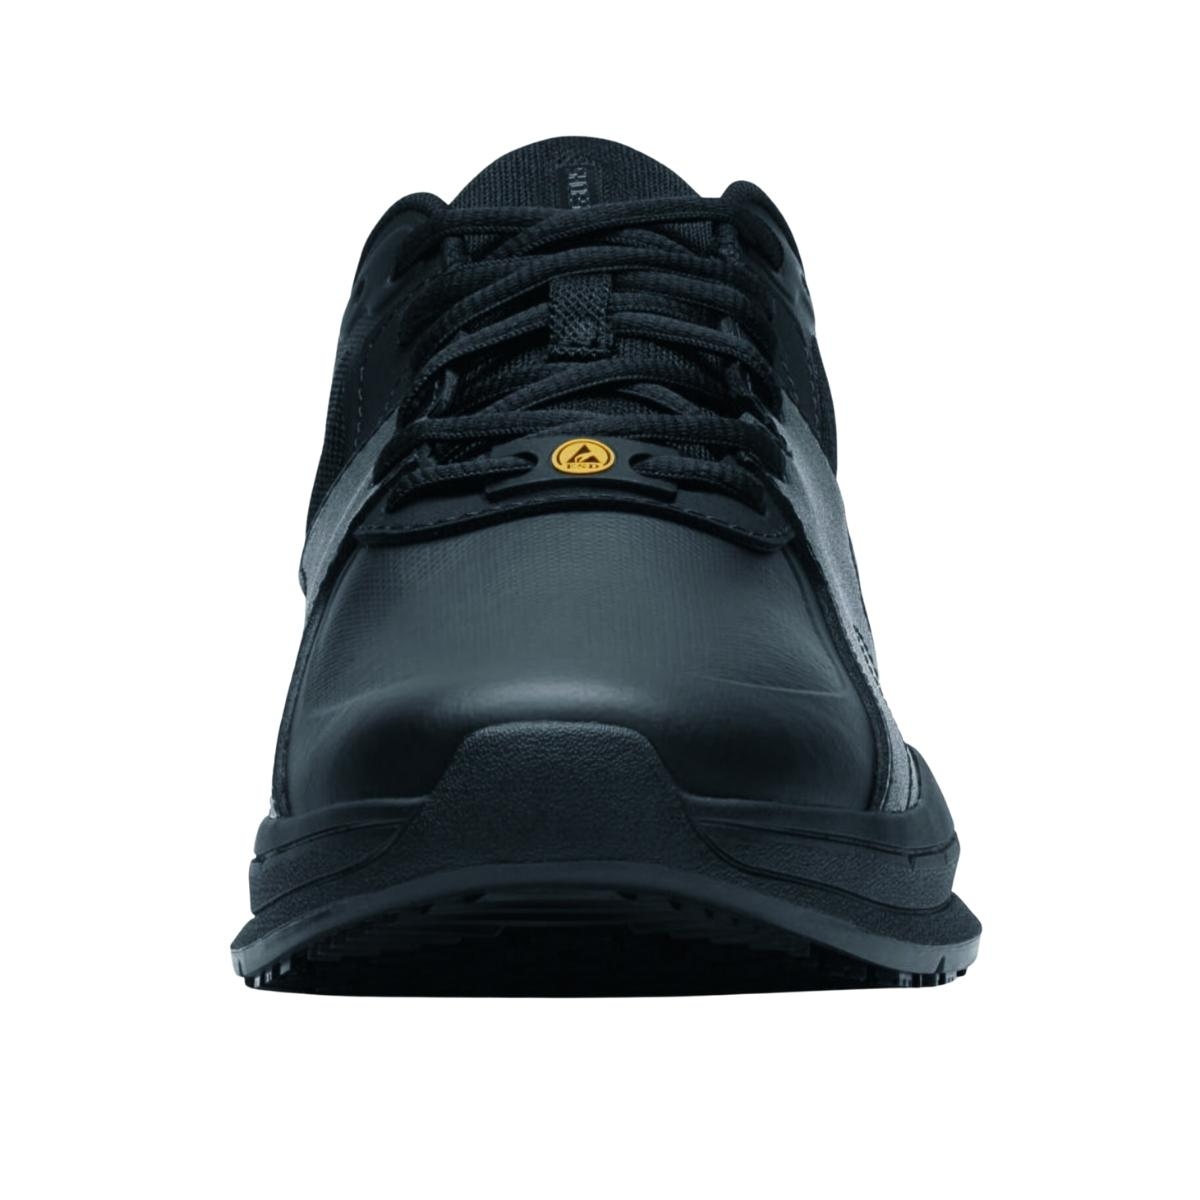 Zapato deportivo negro en piel y nylon antideslizante